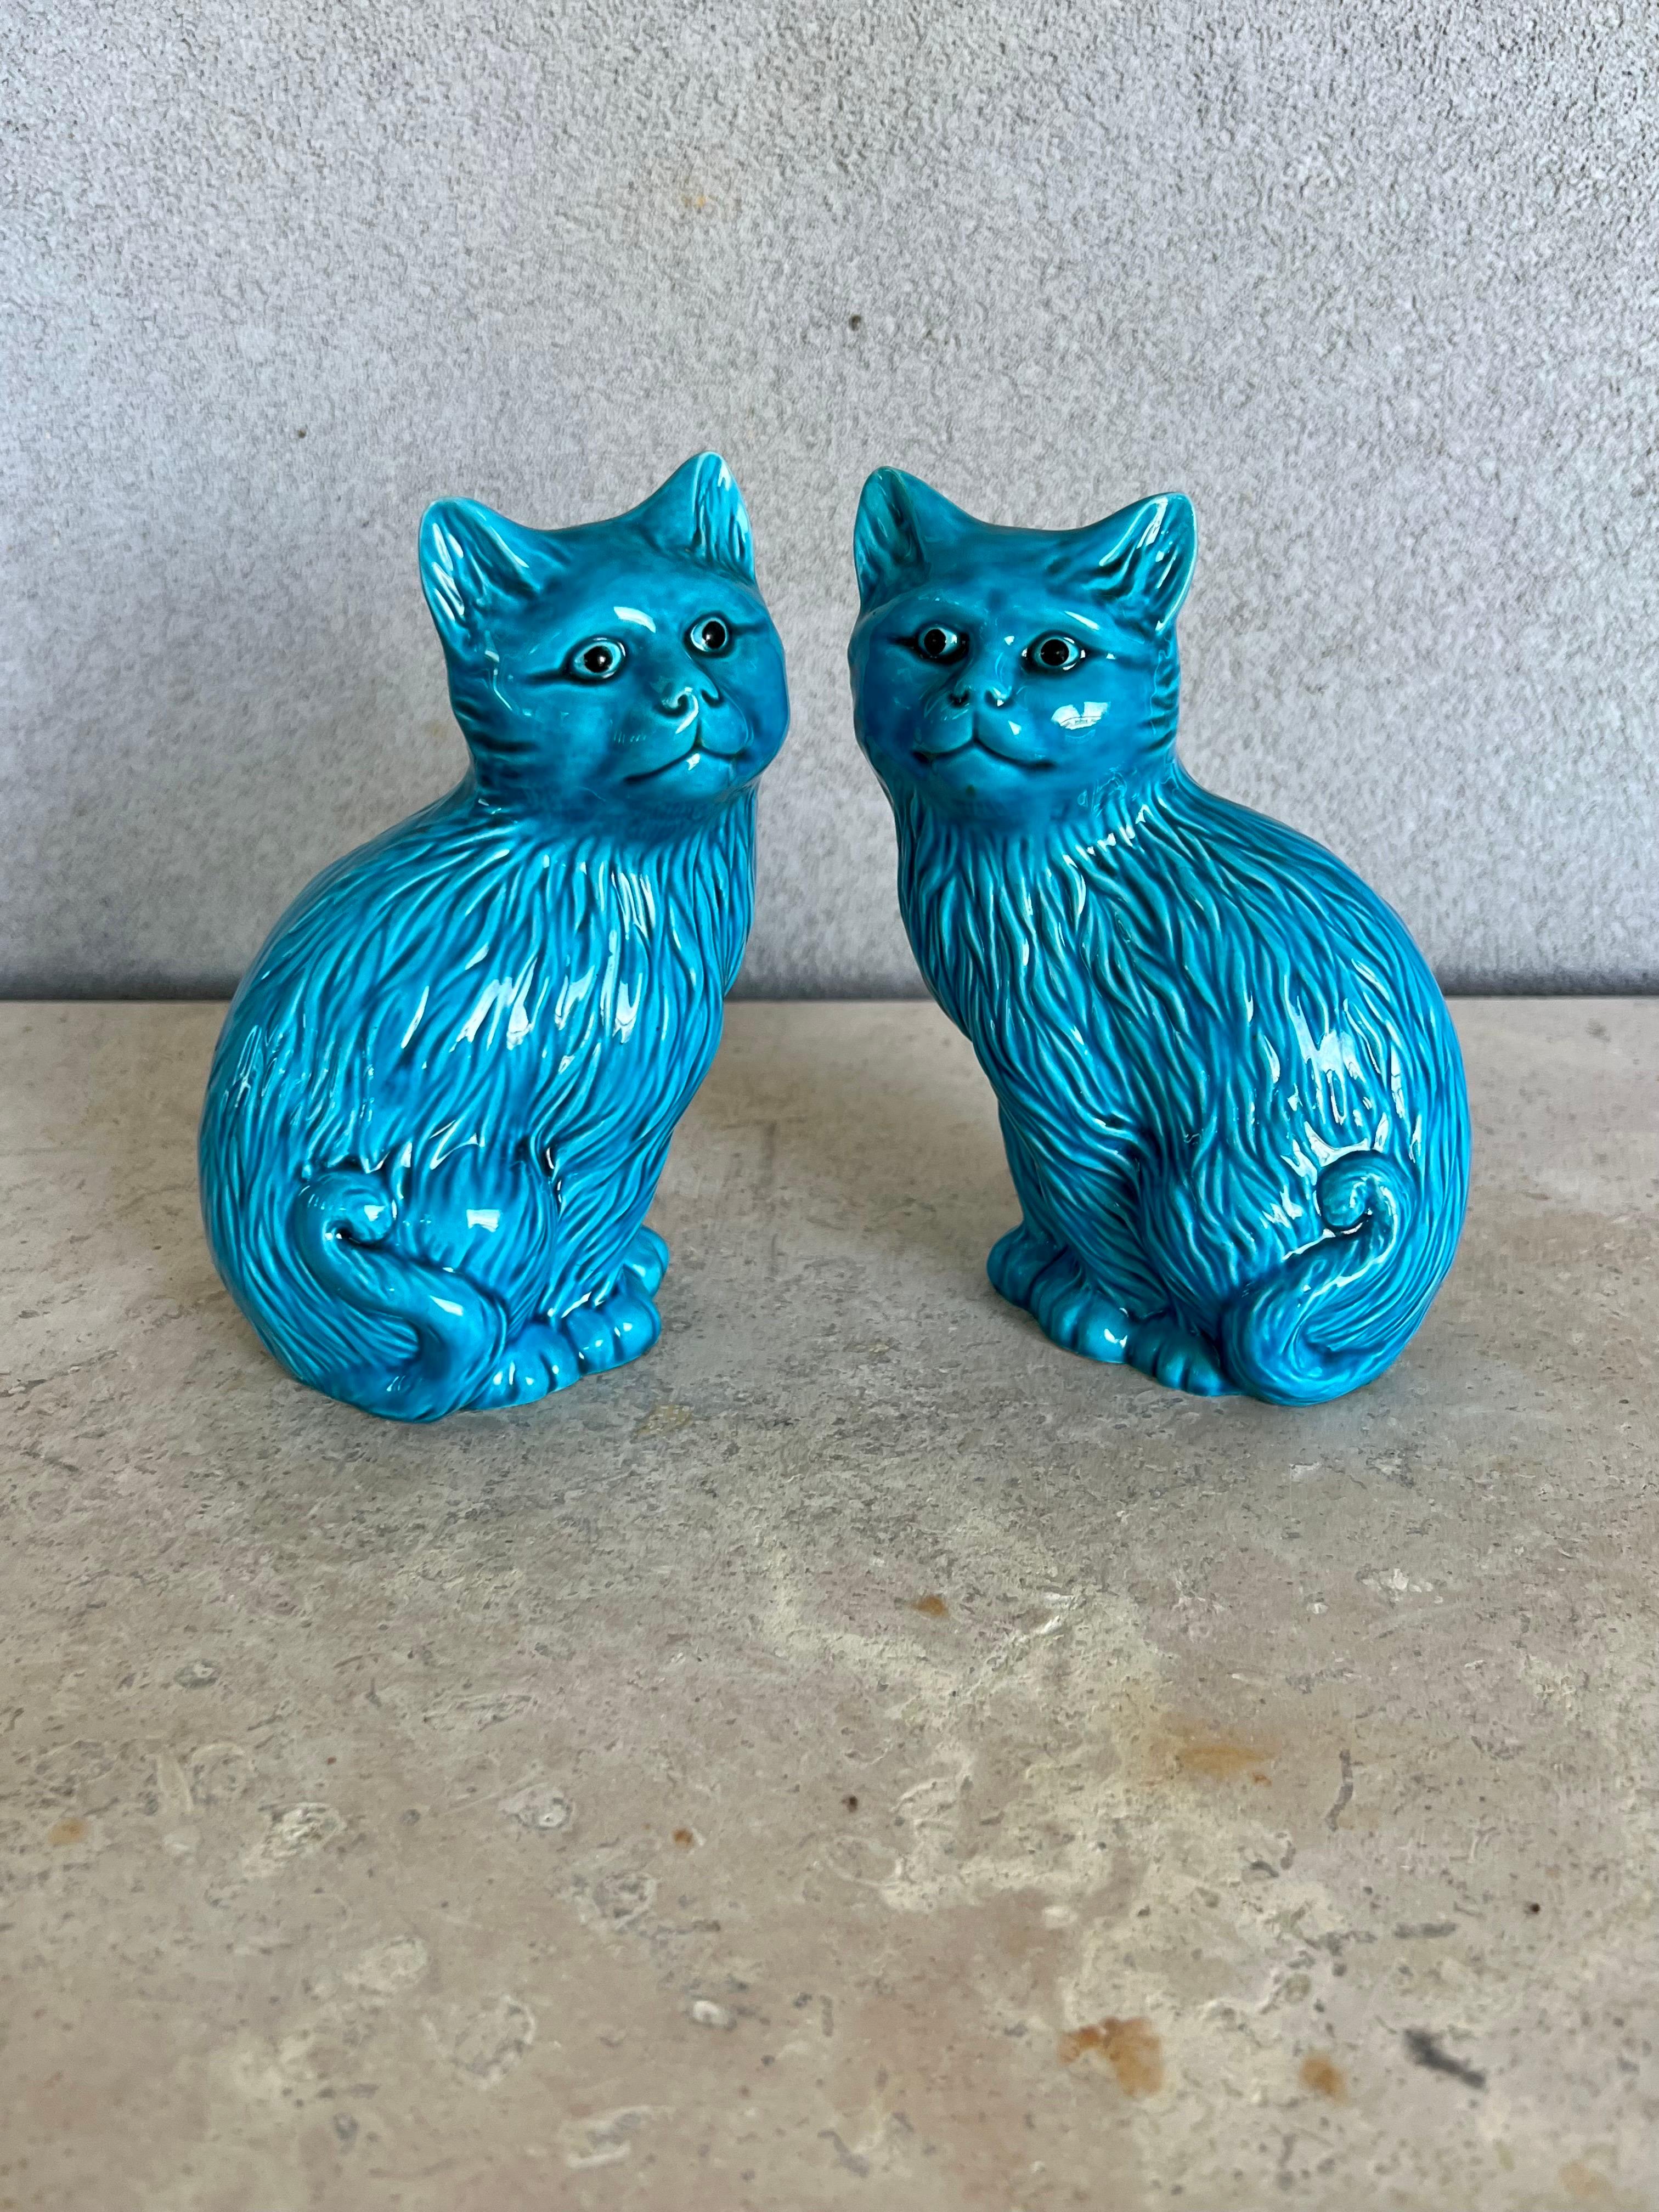 Schönes Paar türkisblauer Katzenfiguren aus Keramik. Dies ist ein linkes und rechtes Paar von asiatischen blauen Kunstkeramik-Katzen, Keramik-Katzen-Statuen, die einander gegenüberstehen. Schöne lebendige Schatten der glänzenden blau / türkis und